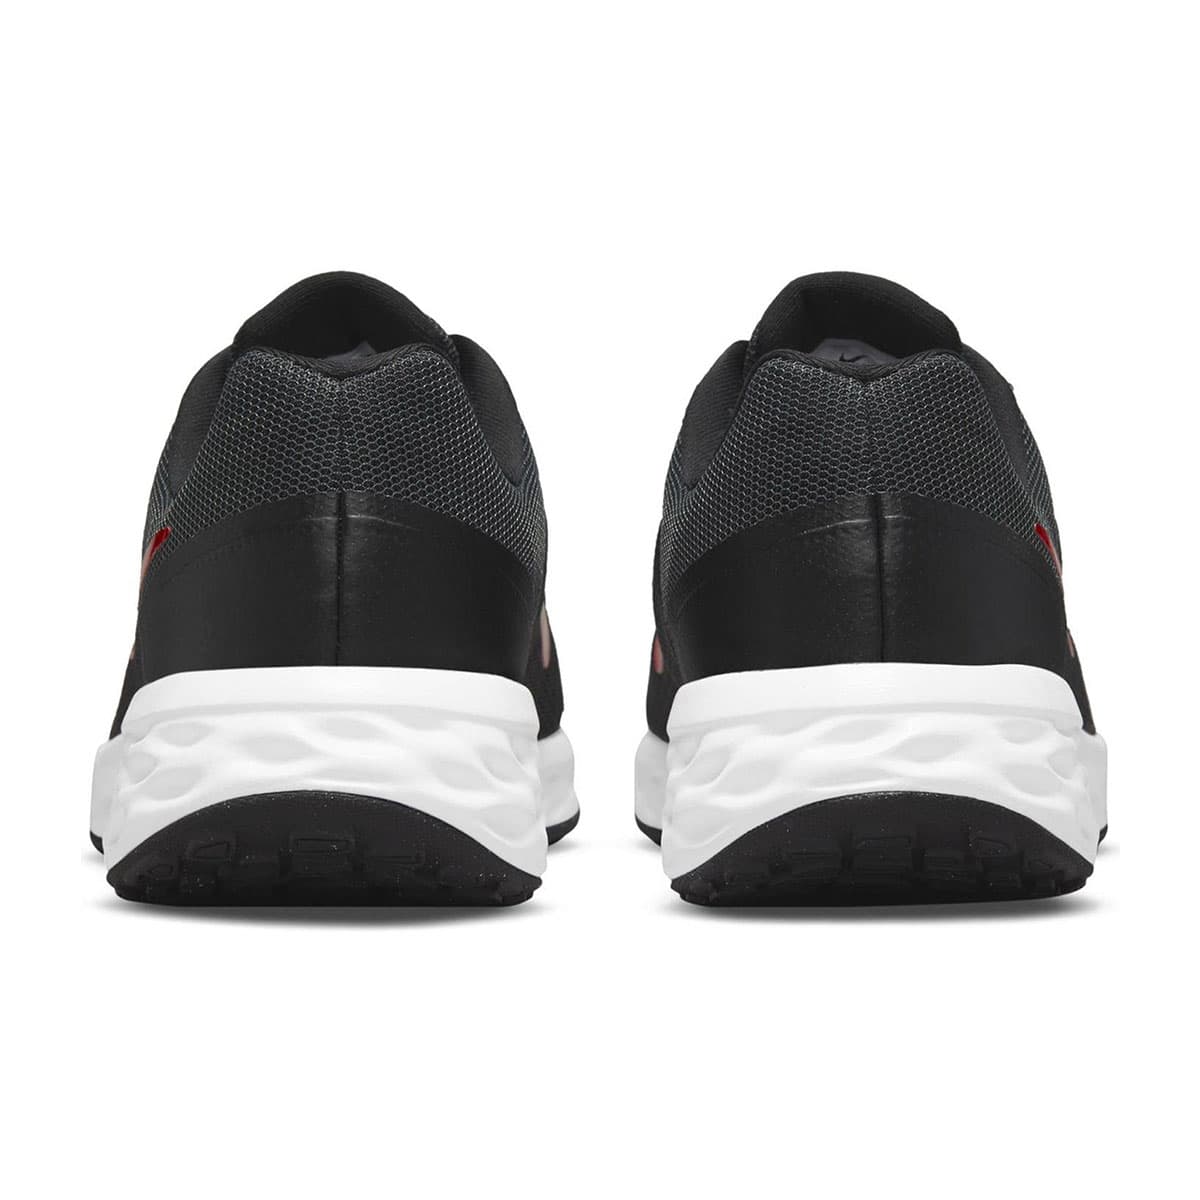 Nike Revolution 6 Siyah Spor Ayakkabı (DC3728-005)